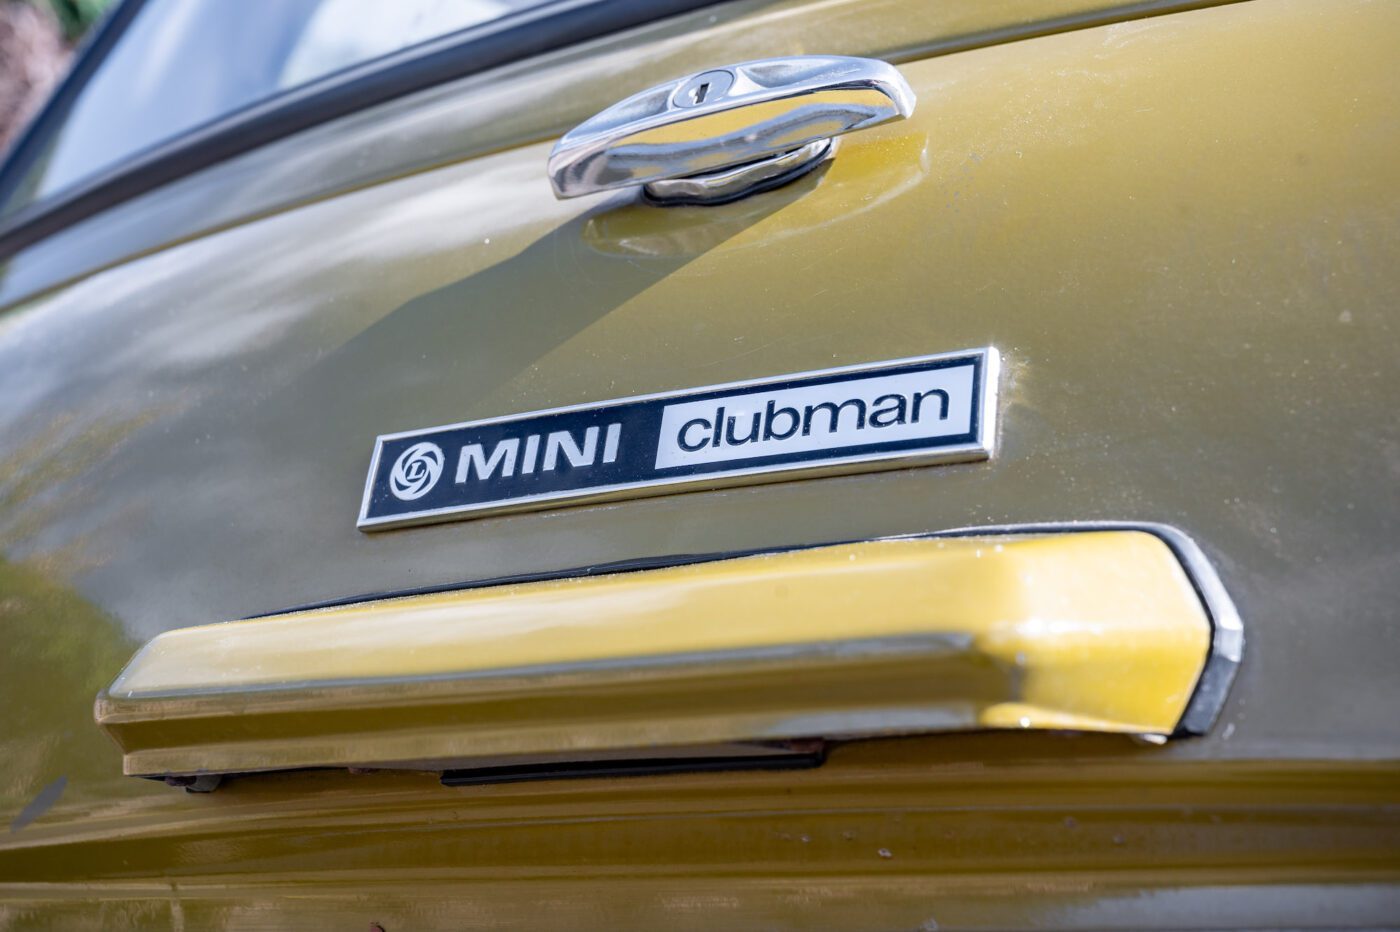 Mini Clubman badge